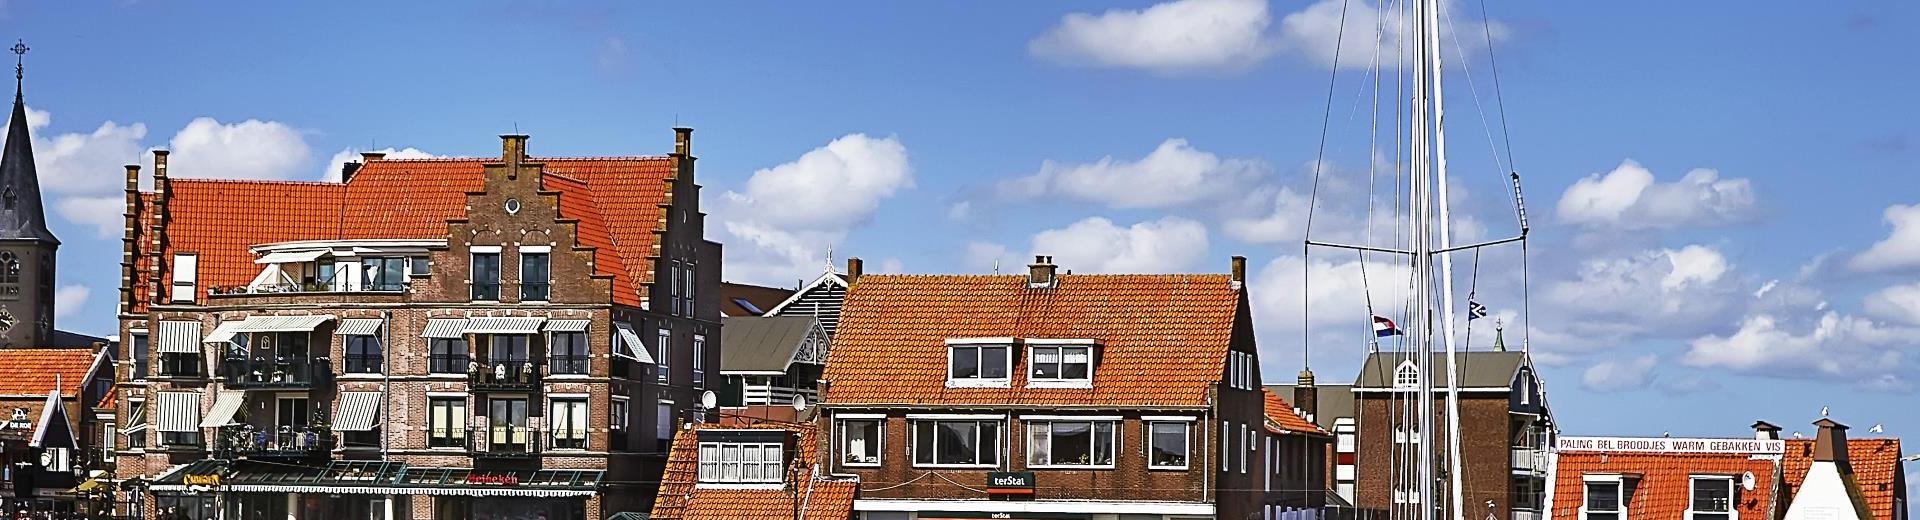 Vakantiehuis Lelystad - vakantie in de hoofdstad van Flevoland - EuroRelais